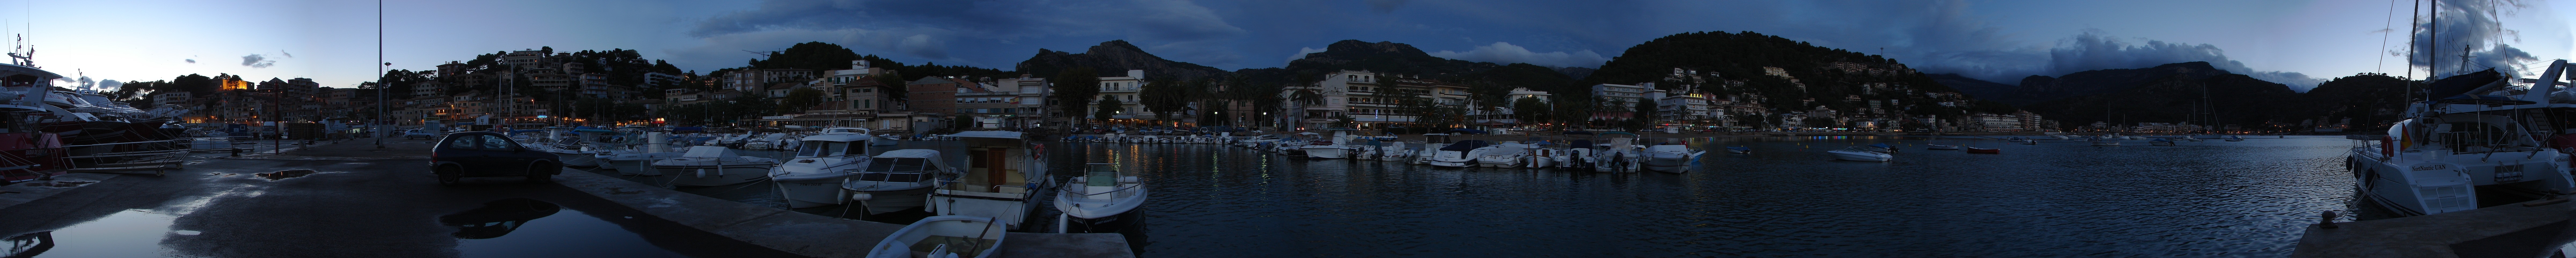 Puerto de Soller, Mallorca